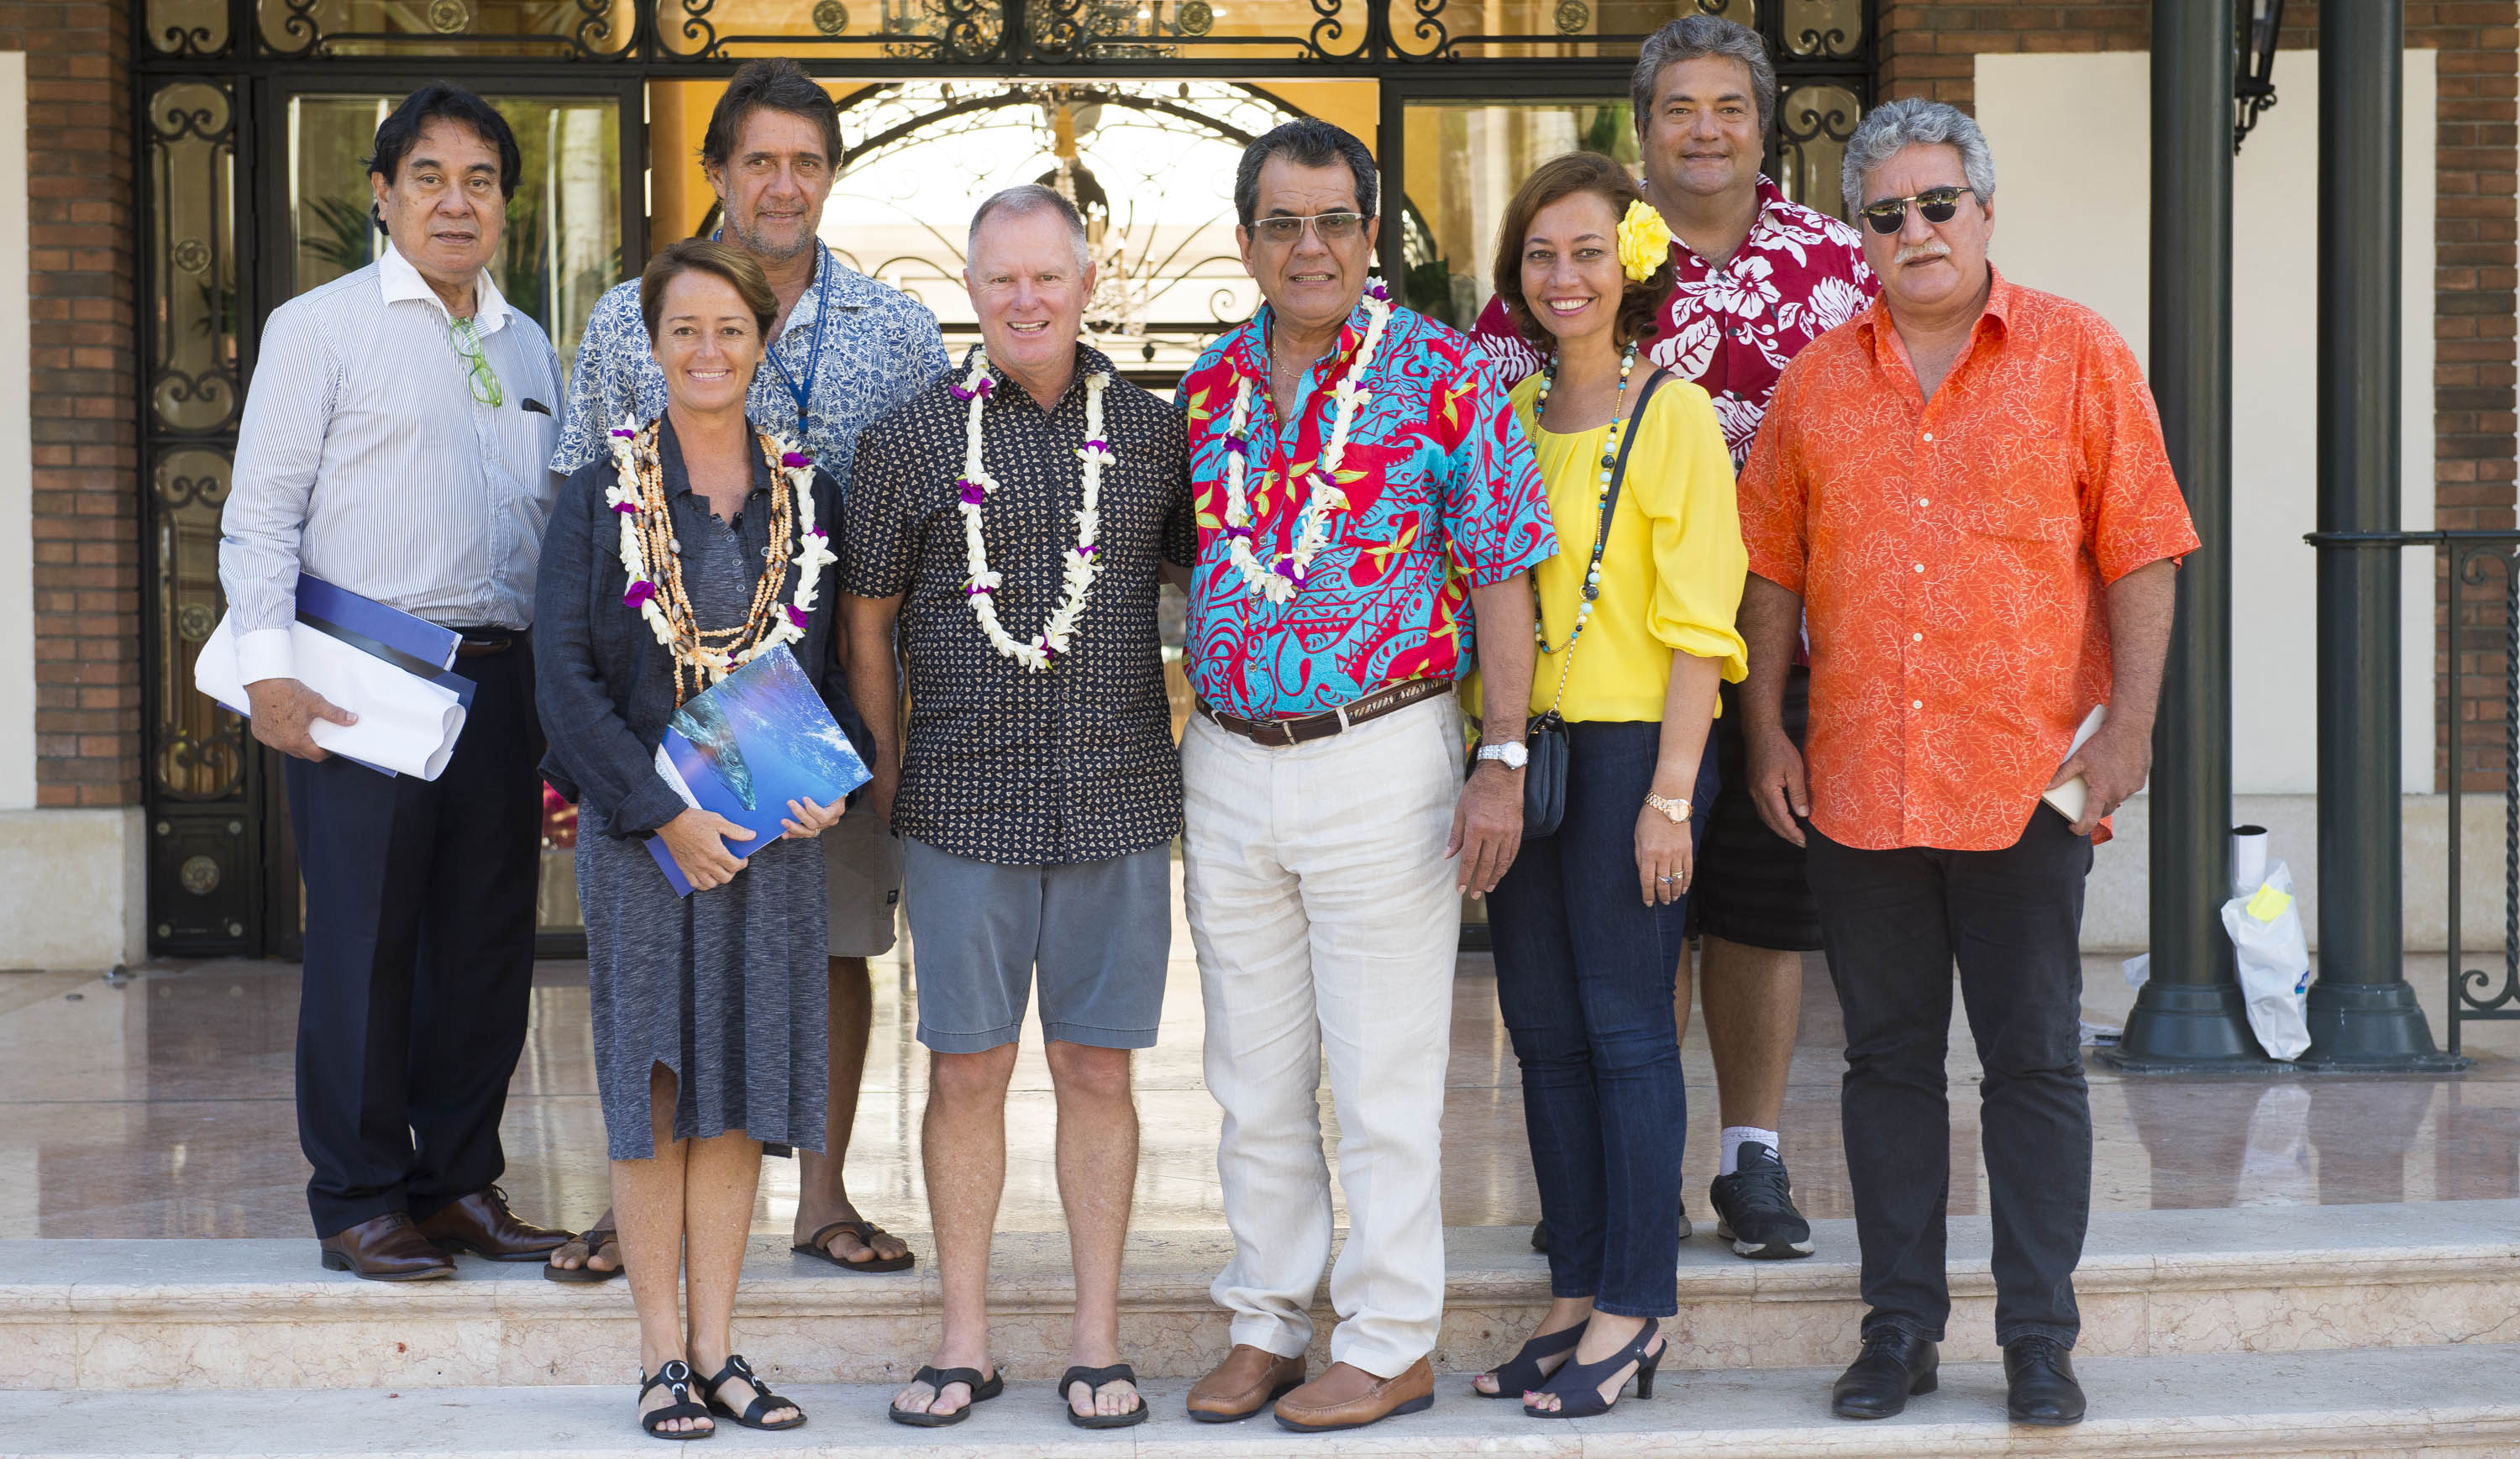 Accès facilité pour les surfeurs tahitiens aux compétitions à Hawaii